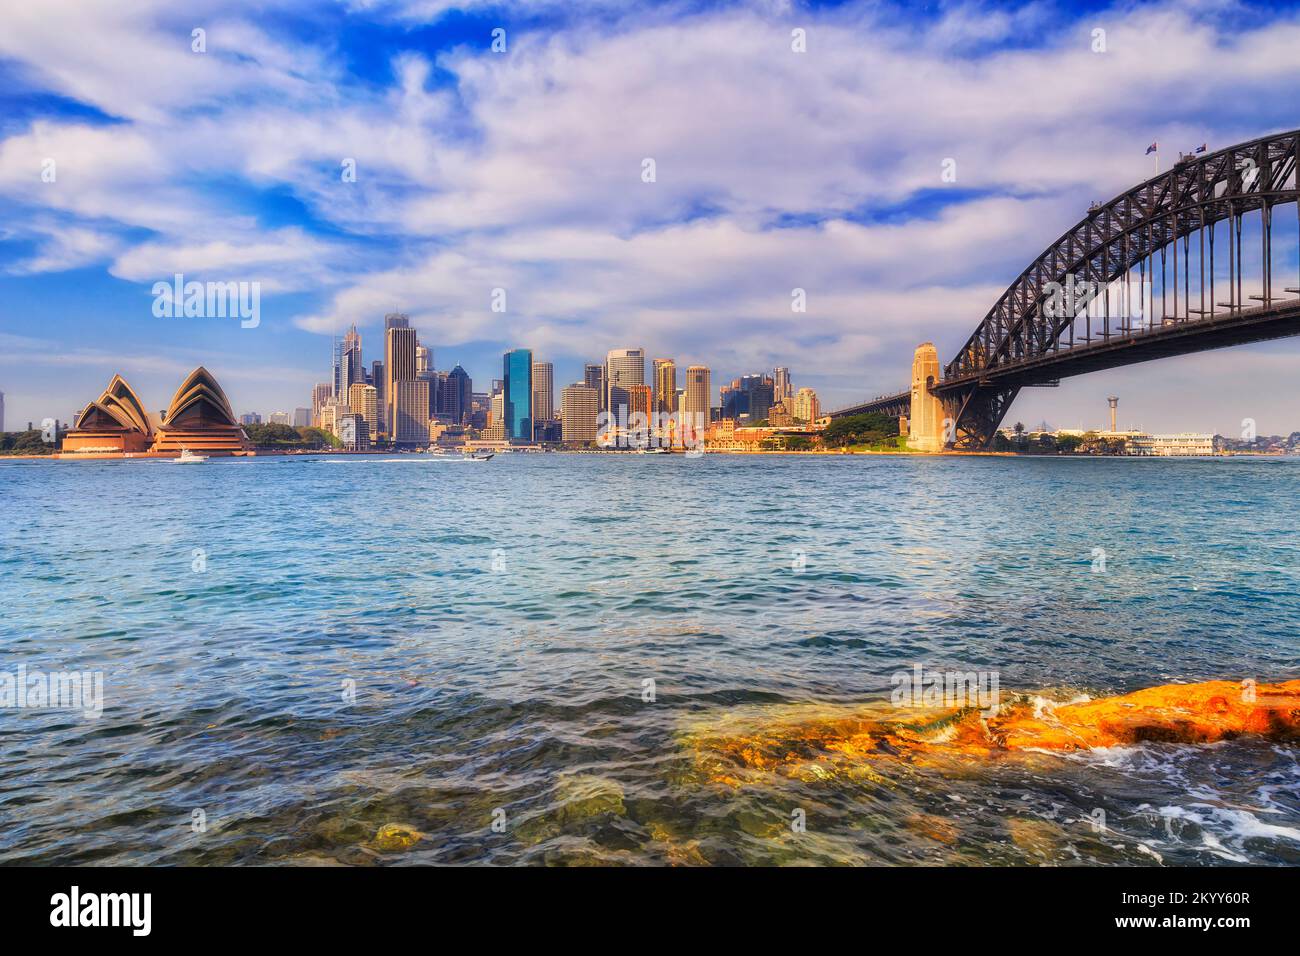 Fonte d'acqua del porto cittadino di Sydney con i principali punti di riferimento architettonici intorno al Circular Quay, The Rocks e North Sydney. Foto Stock